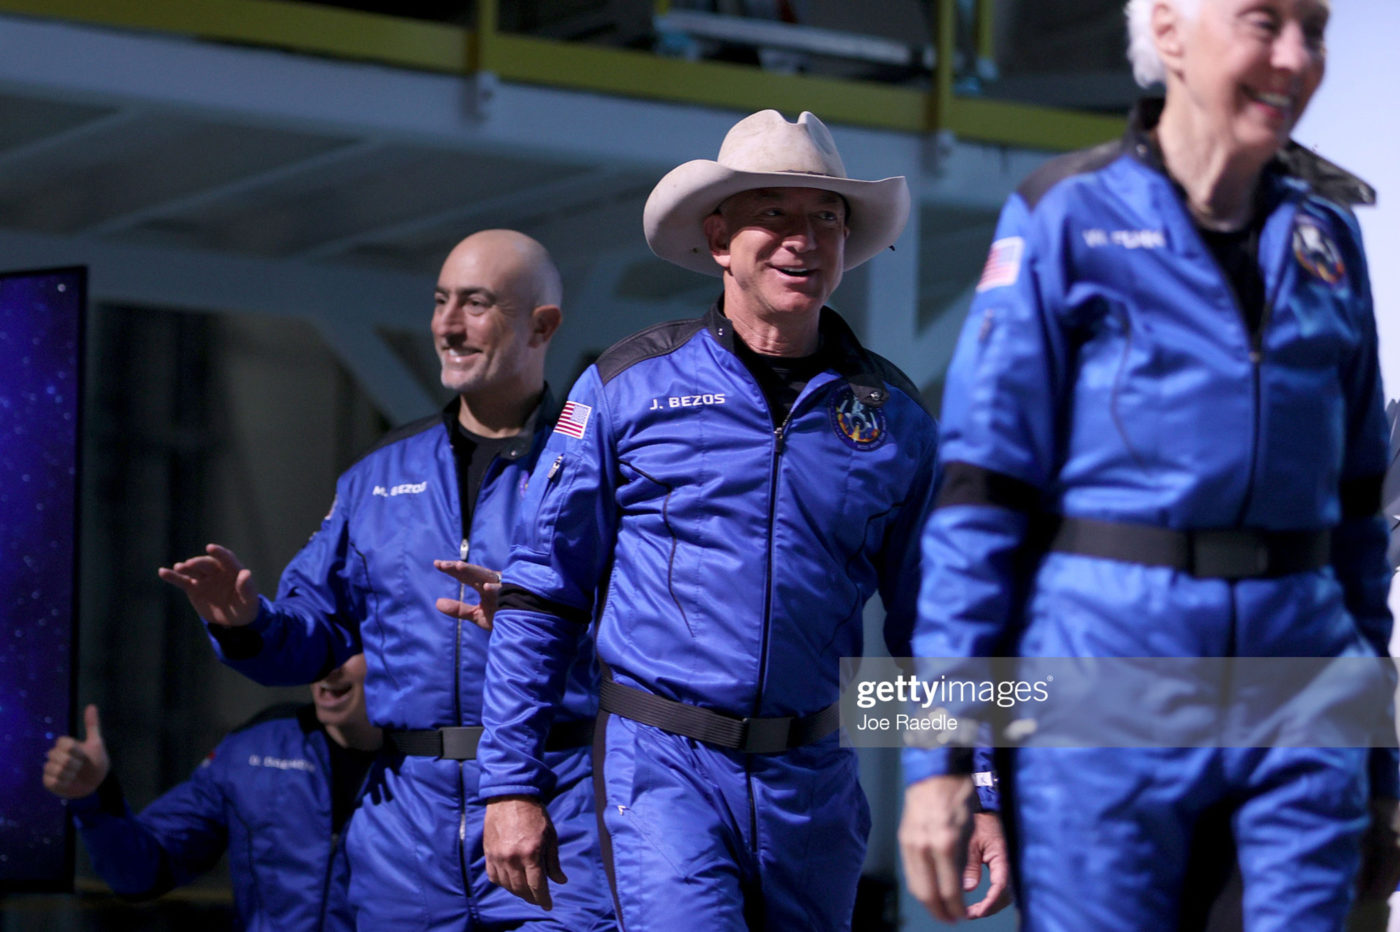 Ciekawostki Jeff Bezos, Blue Origin i Omega Speedmaster w kosmosie